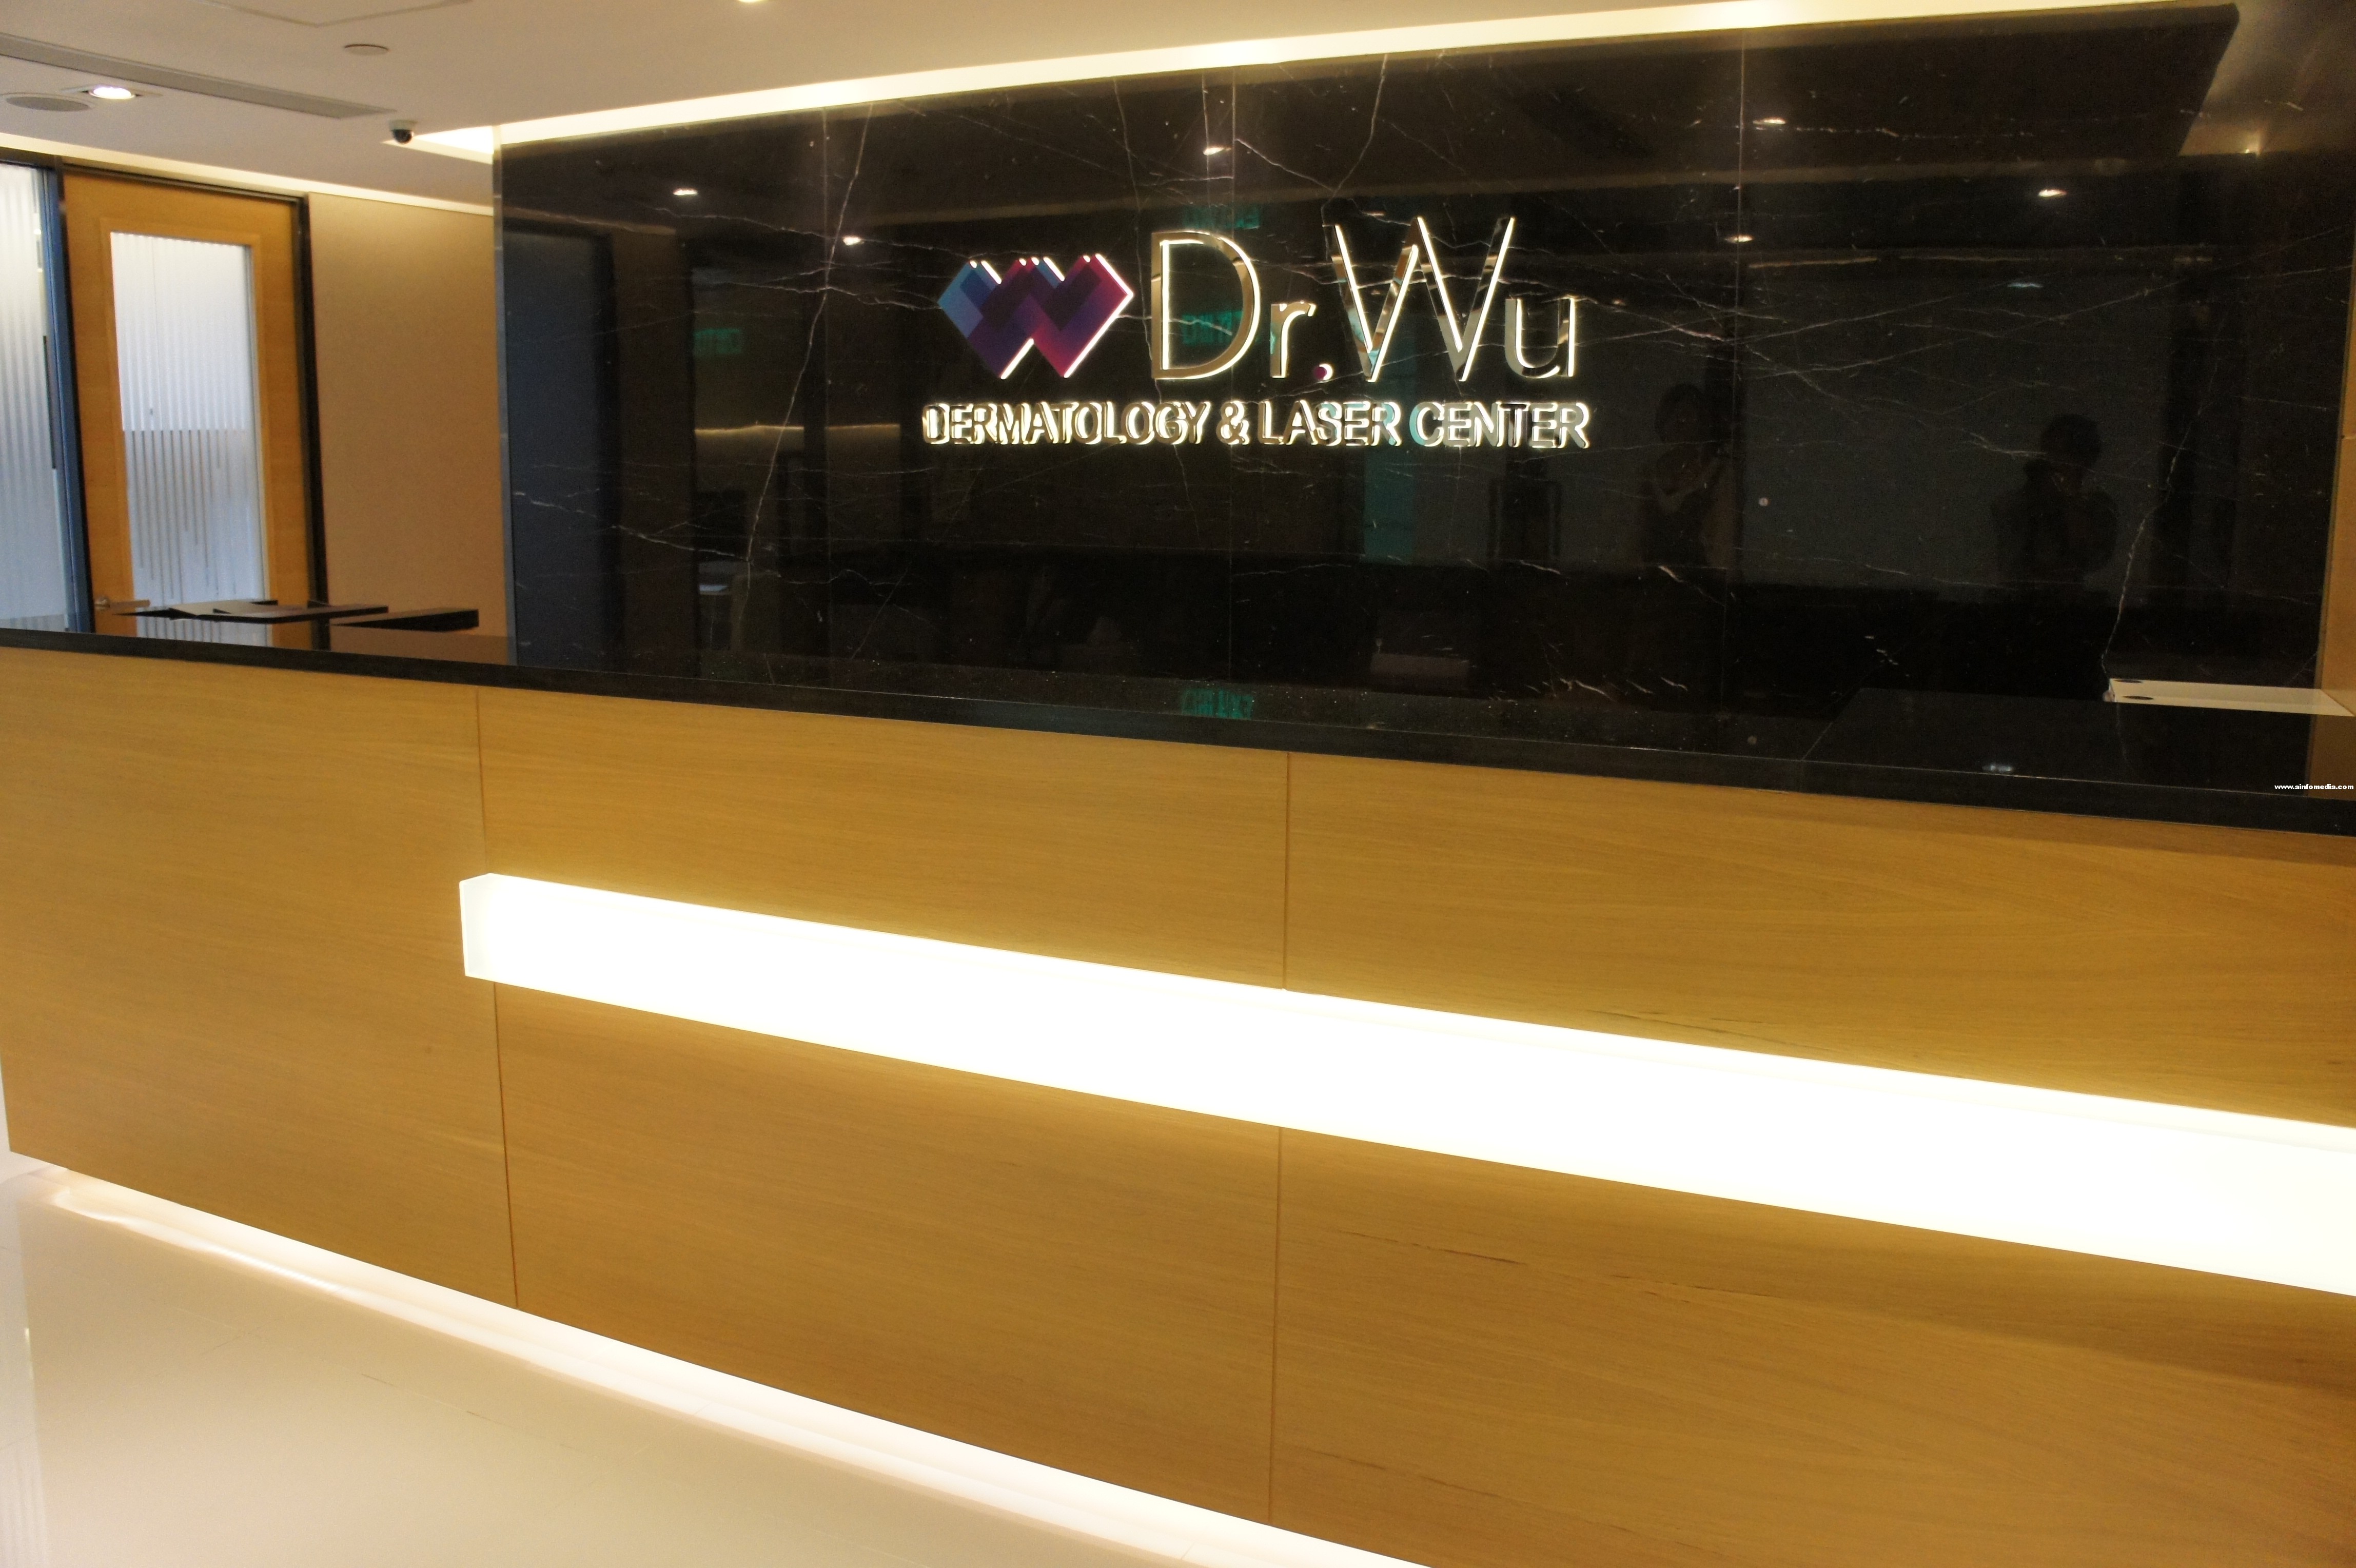 [旺角] Dr.Wu Laser & Dermatology centre 旺角店